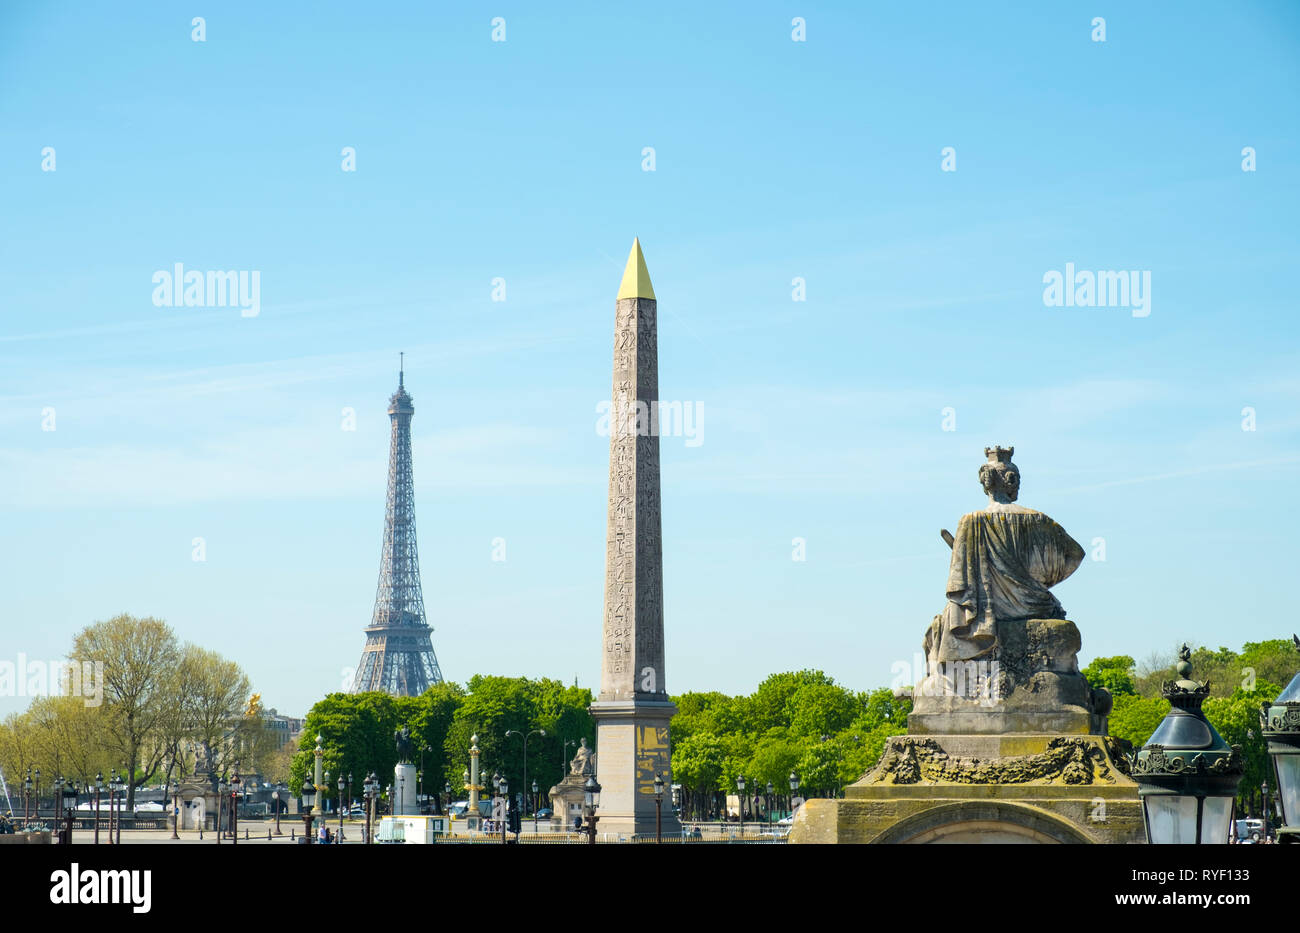 La queue de la statue de Strasbourg, obélisque égyptien, de la Tour Eiffel et à la place de la Concorde à Paris, France Banque D'Images